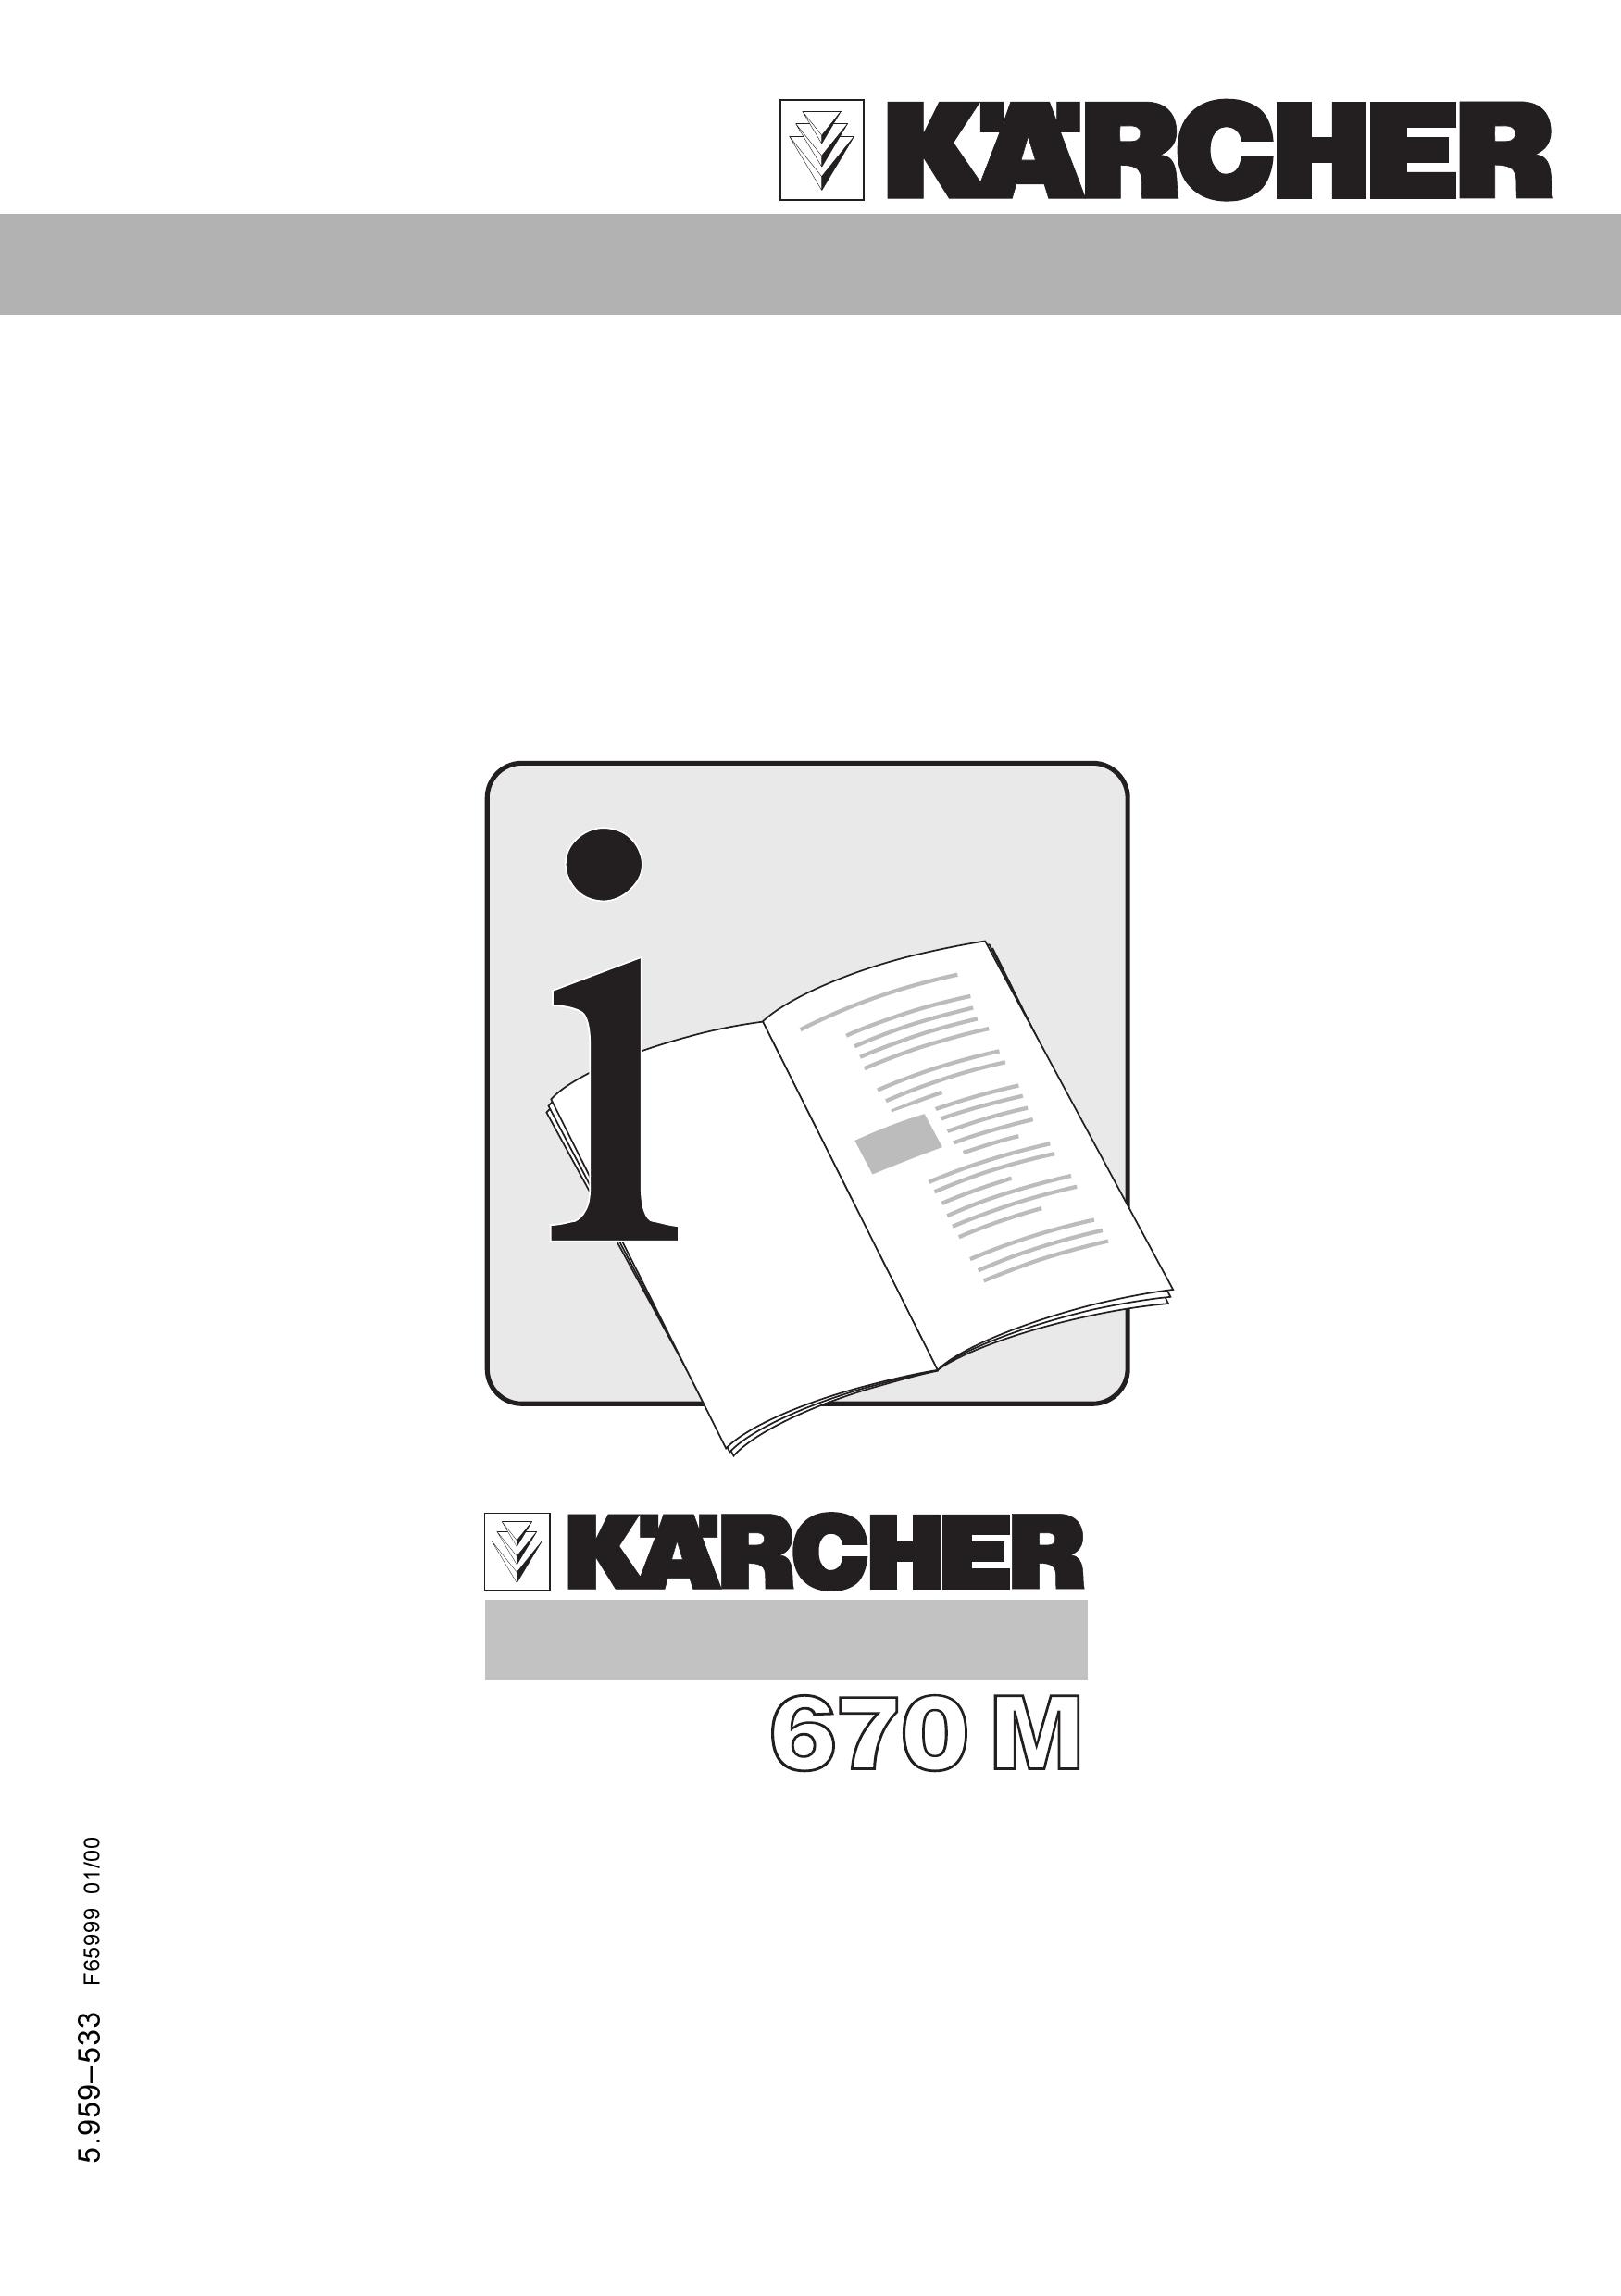 Karcher 670M Pressure Washer User Manual